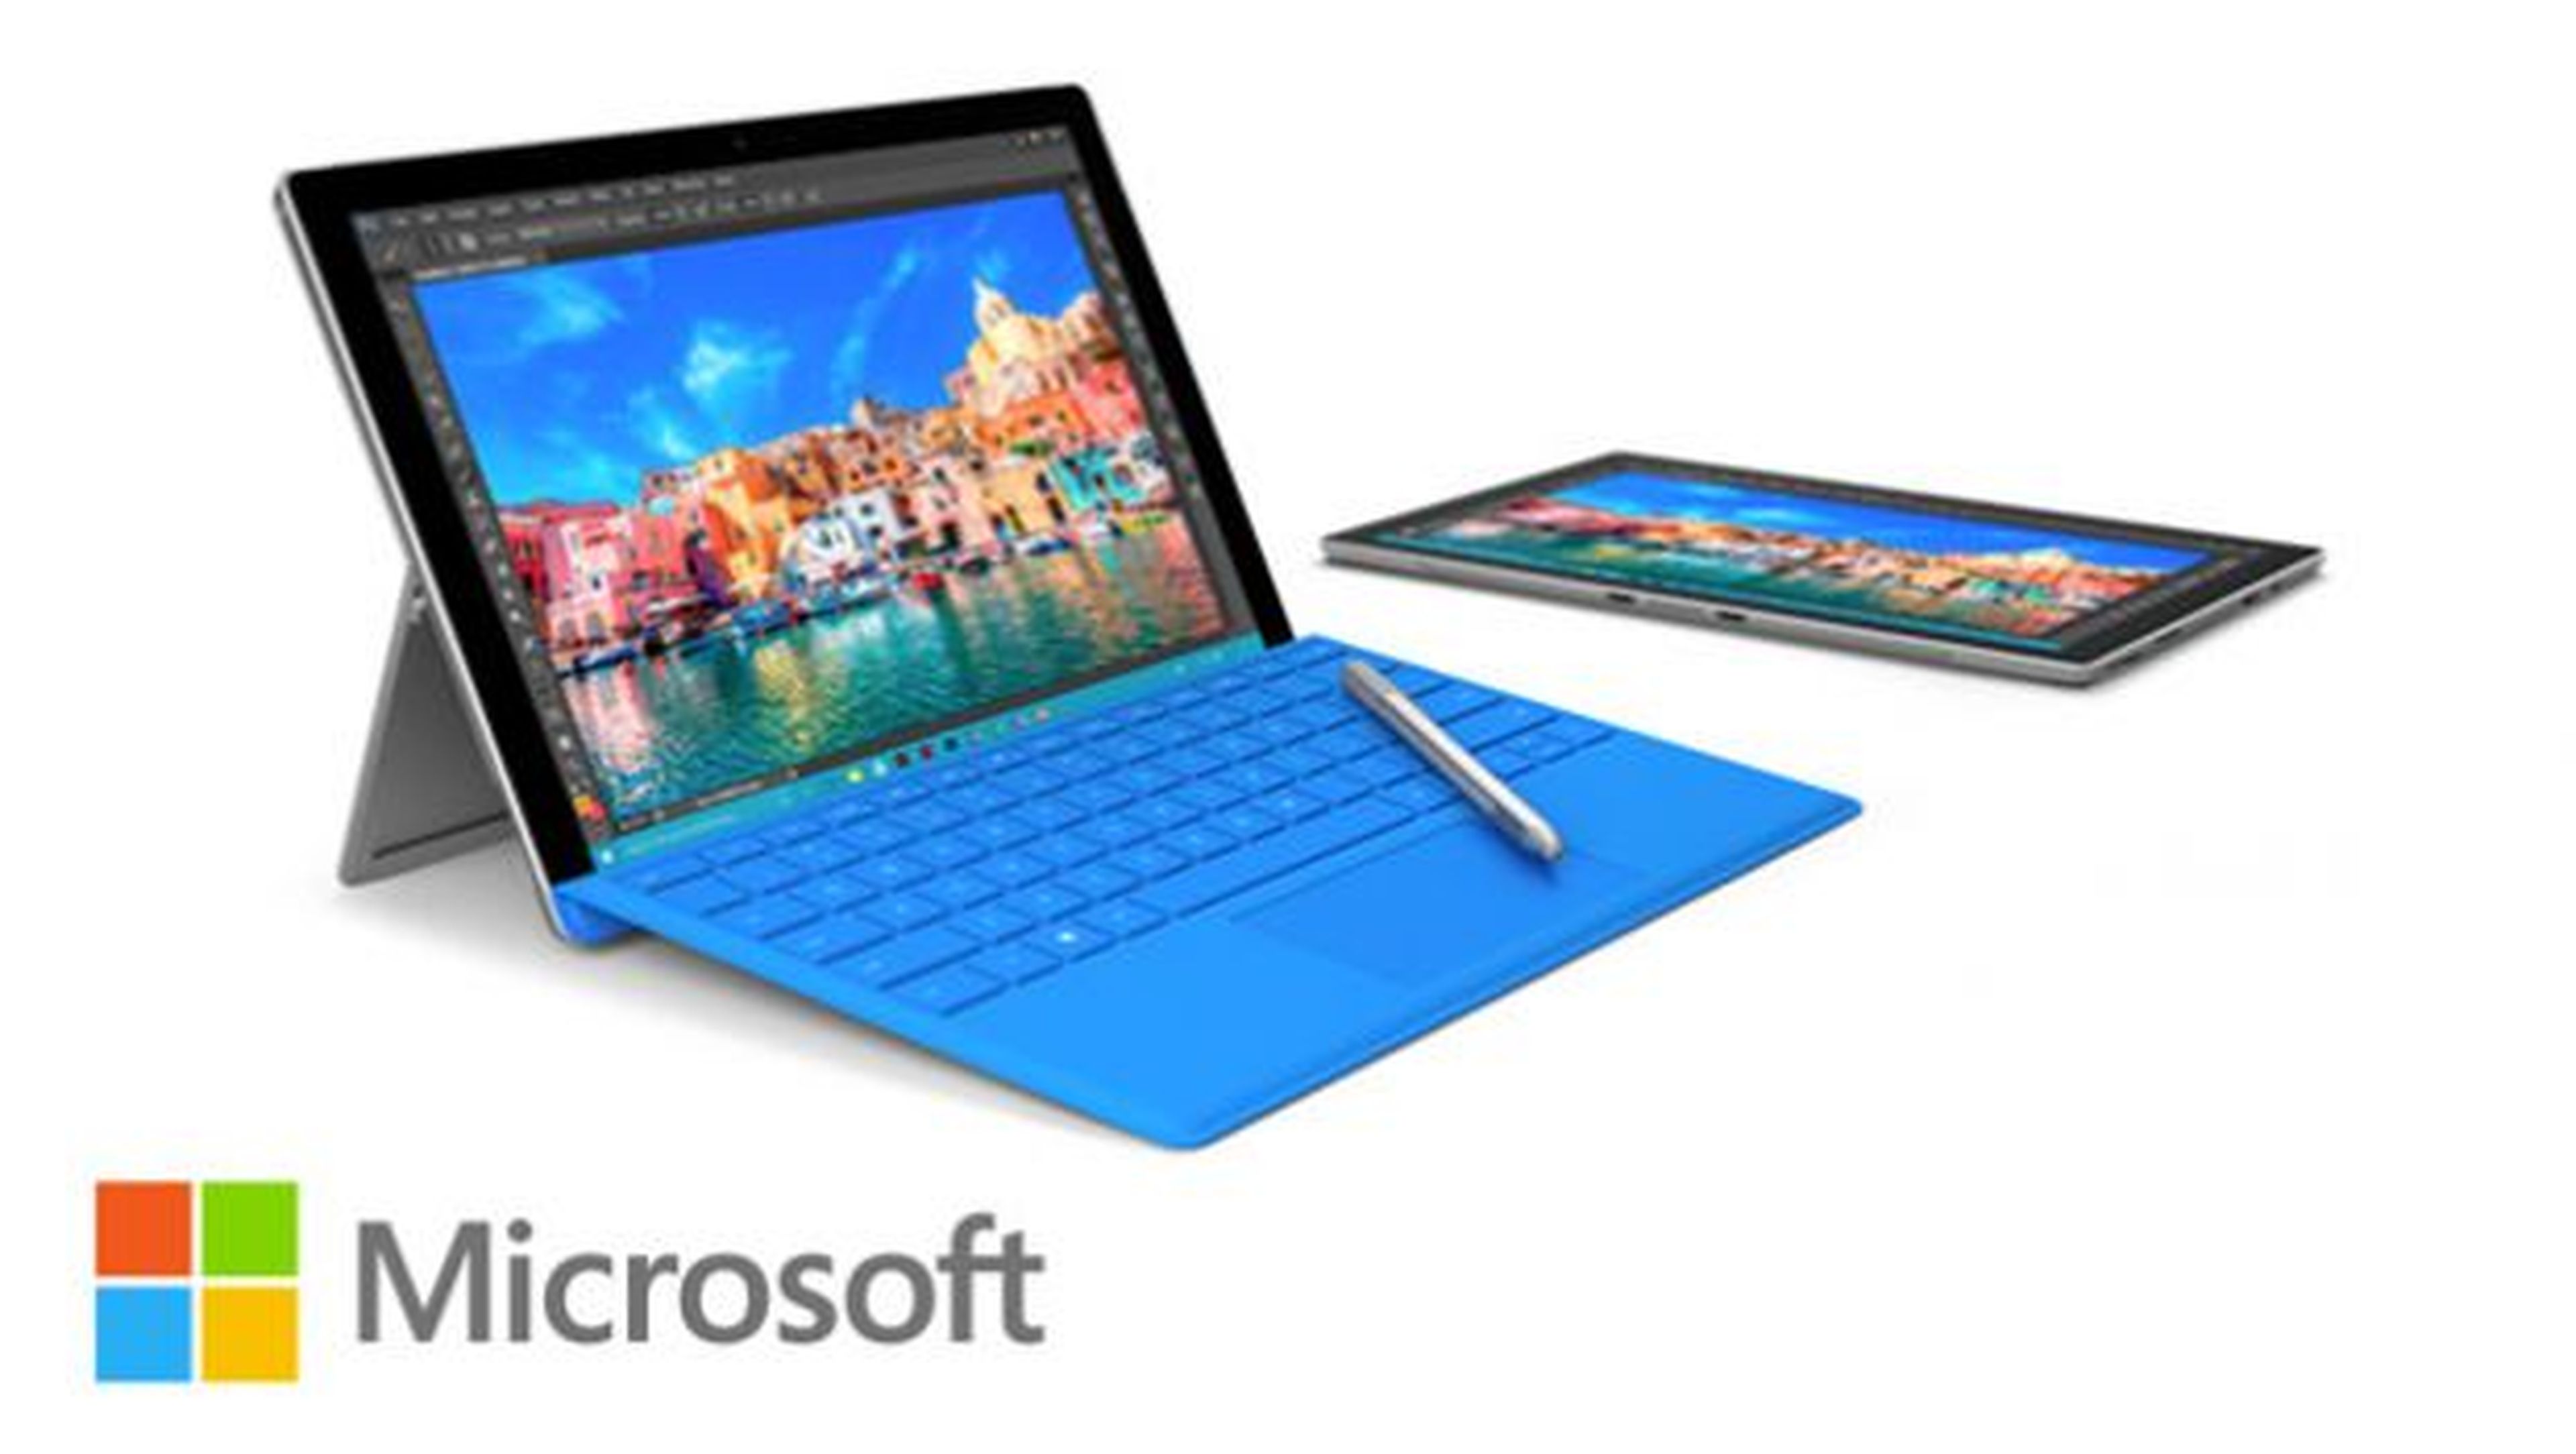 Con la promoción por tiempo limitado que ha lanzado Microsoft para sus Surface Pro 4, el precio de su modelo de entrada de Surface Pro 4 con teclado de regalo comienza en 999 euros.